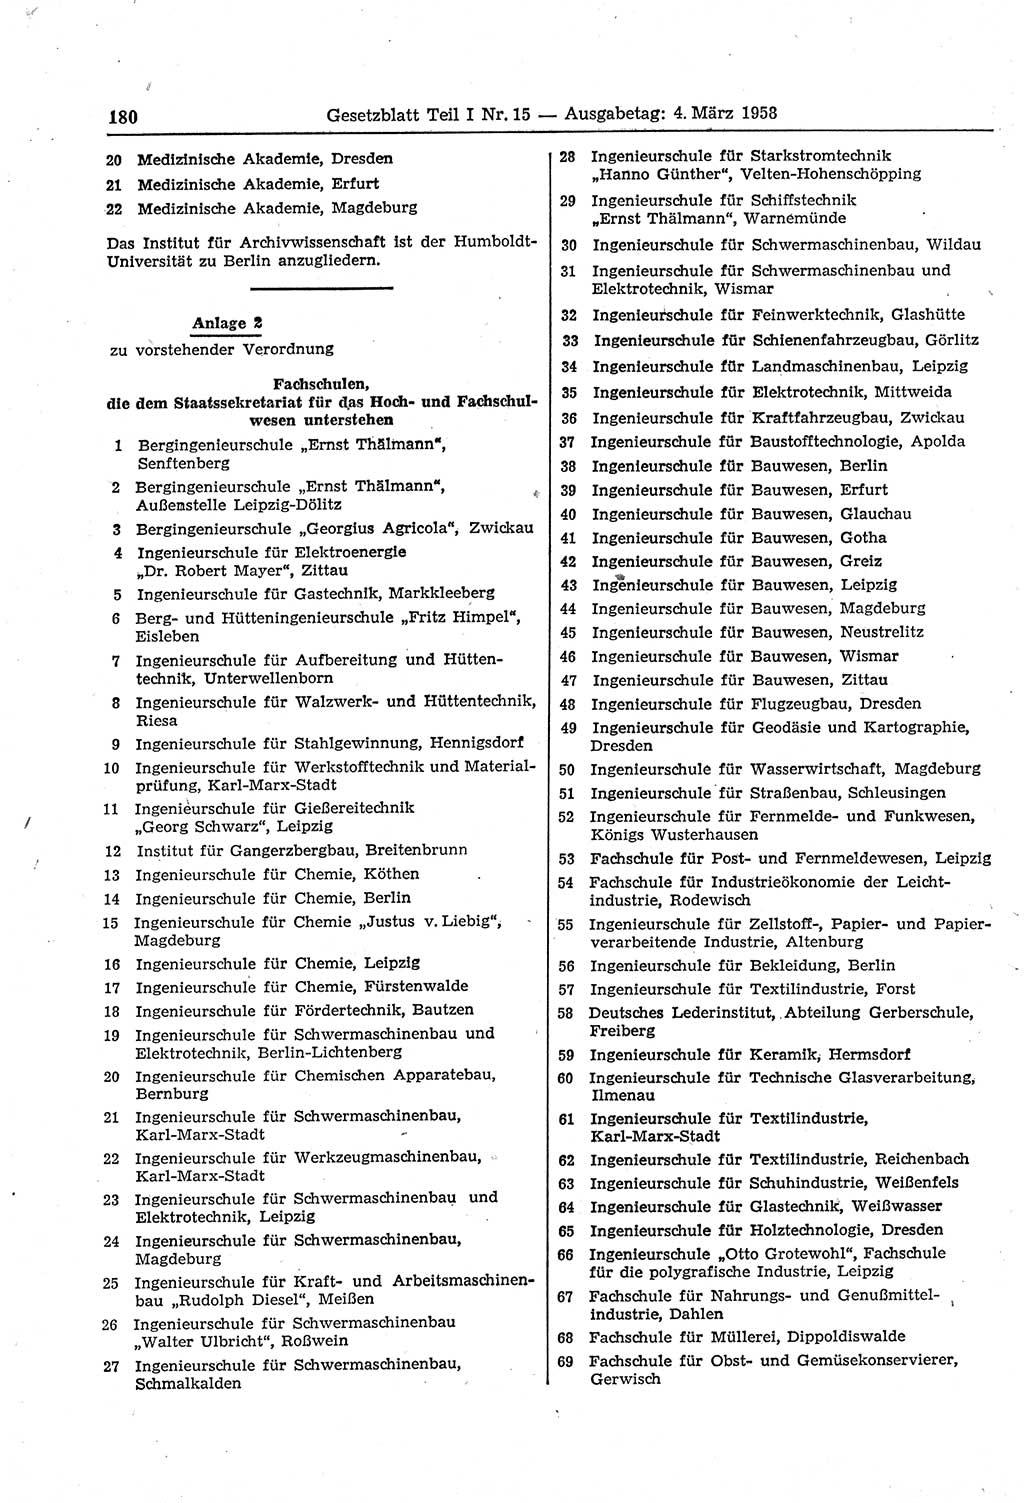 Gesetzblatt (GBl.) der Deutschen Demokratischen Republik (DDR) Teil Ⅰ 1958, Seite 180 (GBl. DDR Ⅰ 1958, S. 180)